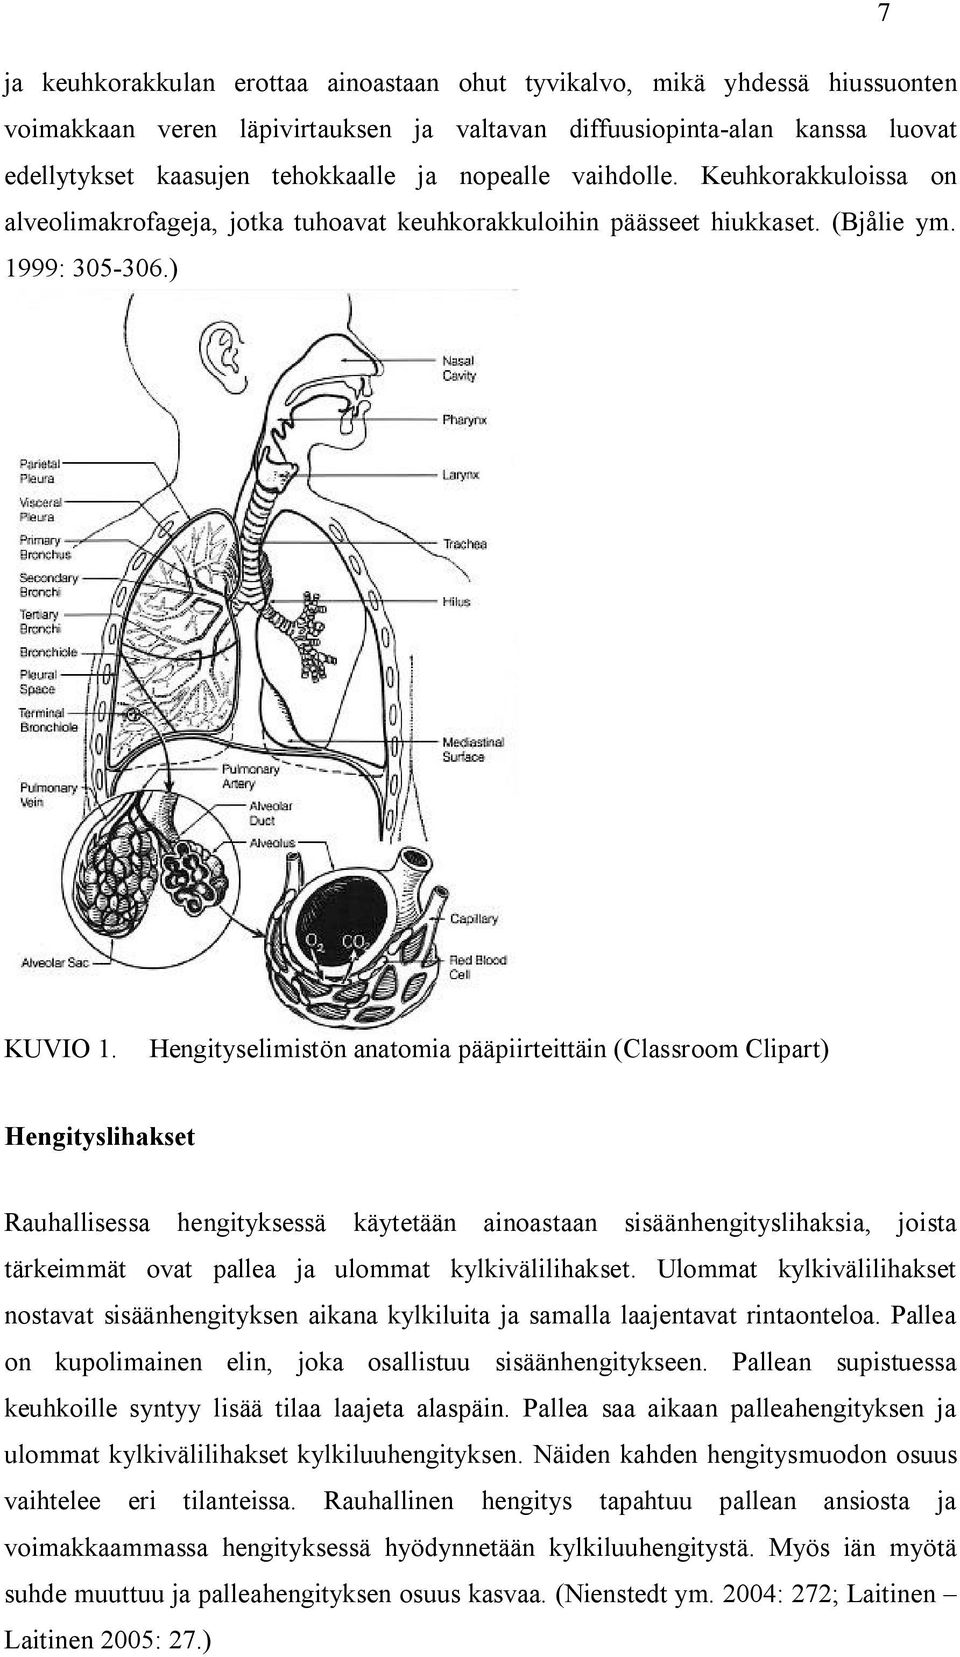 Hengityselimistön anatomia pääpiirteittäin (Classroom Clipart) Hengityslihakset Rauhallisessa hengityksessä käytetään ainoastaan sisäänhengityslihaksia, joista tärkeimmät ovat pallea ja ulommat